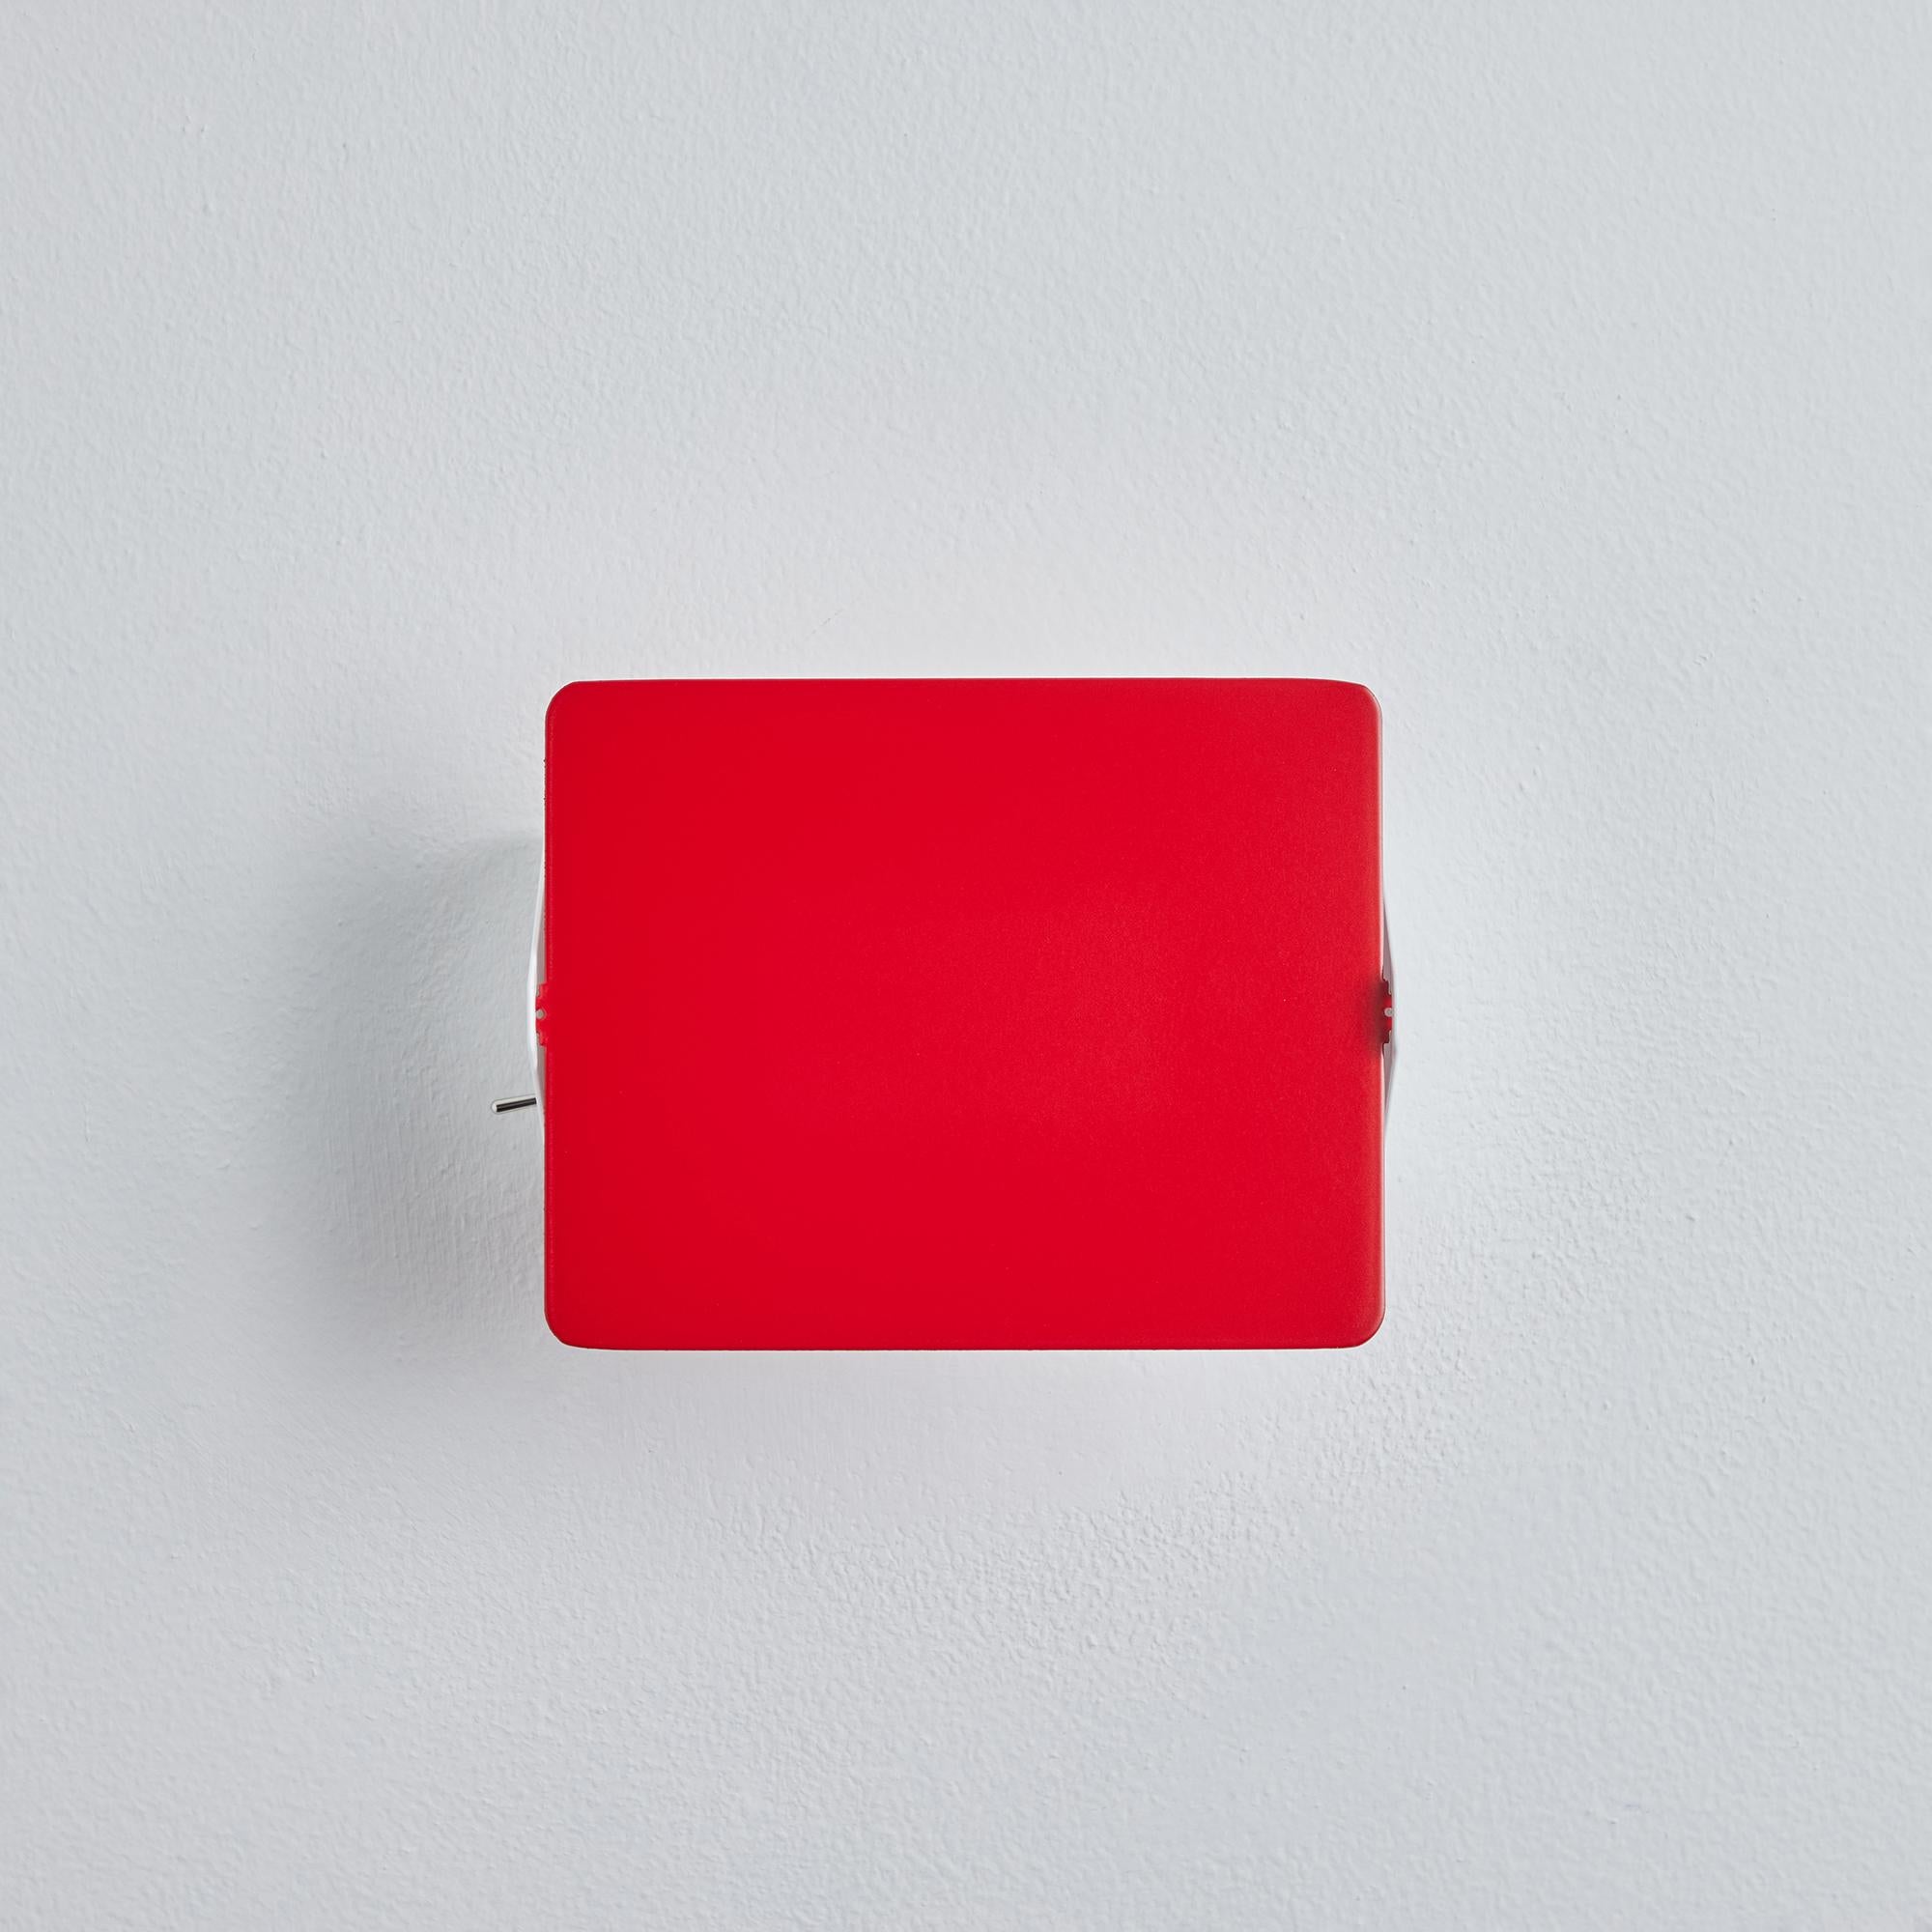 Charlotte Perriand 'Applique à Volet Pivotant' Wandleuchte in rot. Ein klares und ikonisches Design aus rot und weiß lackiertem Metall. Ursprünglich in den 1950er Jahren als kultige CP1 entworfen, werden diese neu produzierten, autorisierten